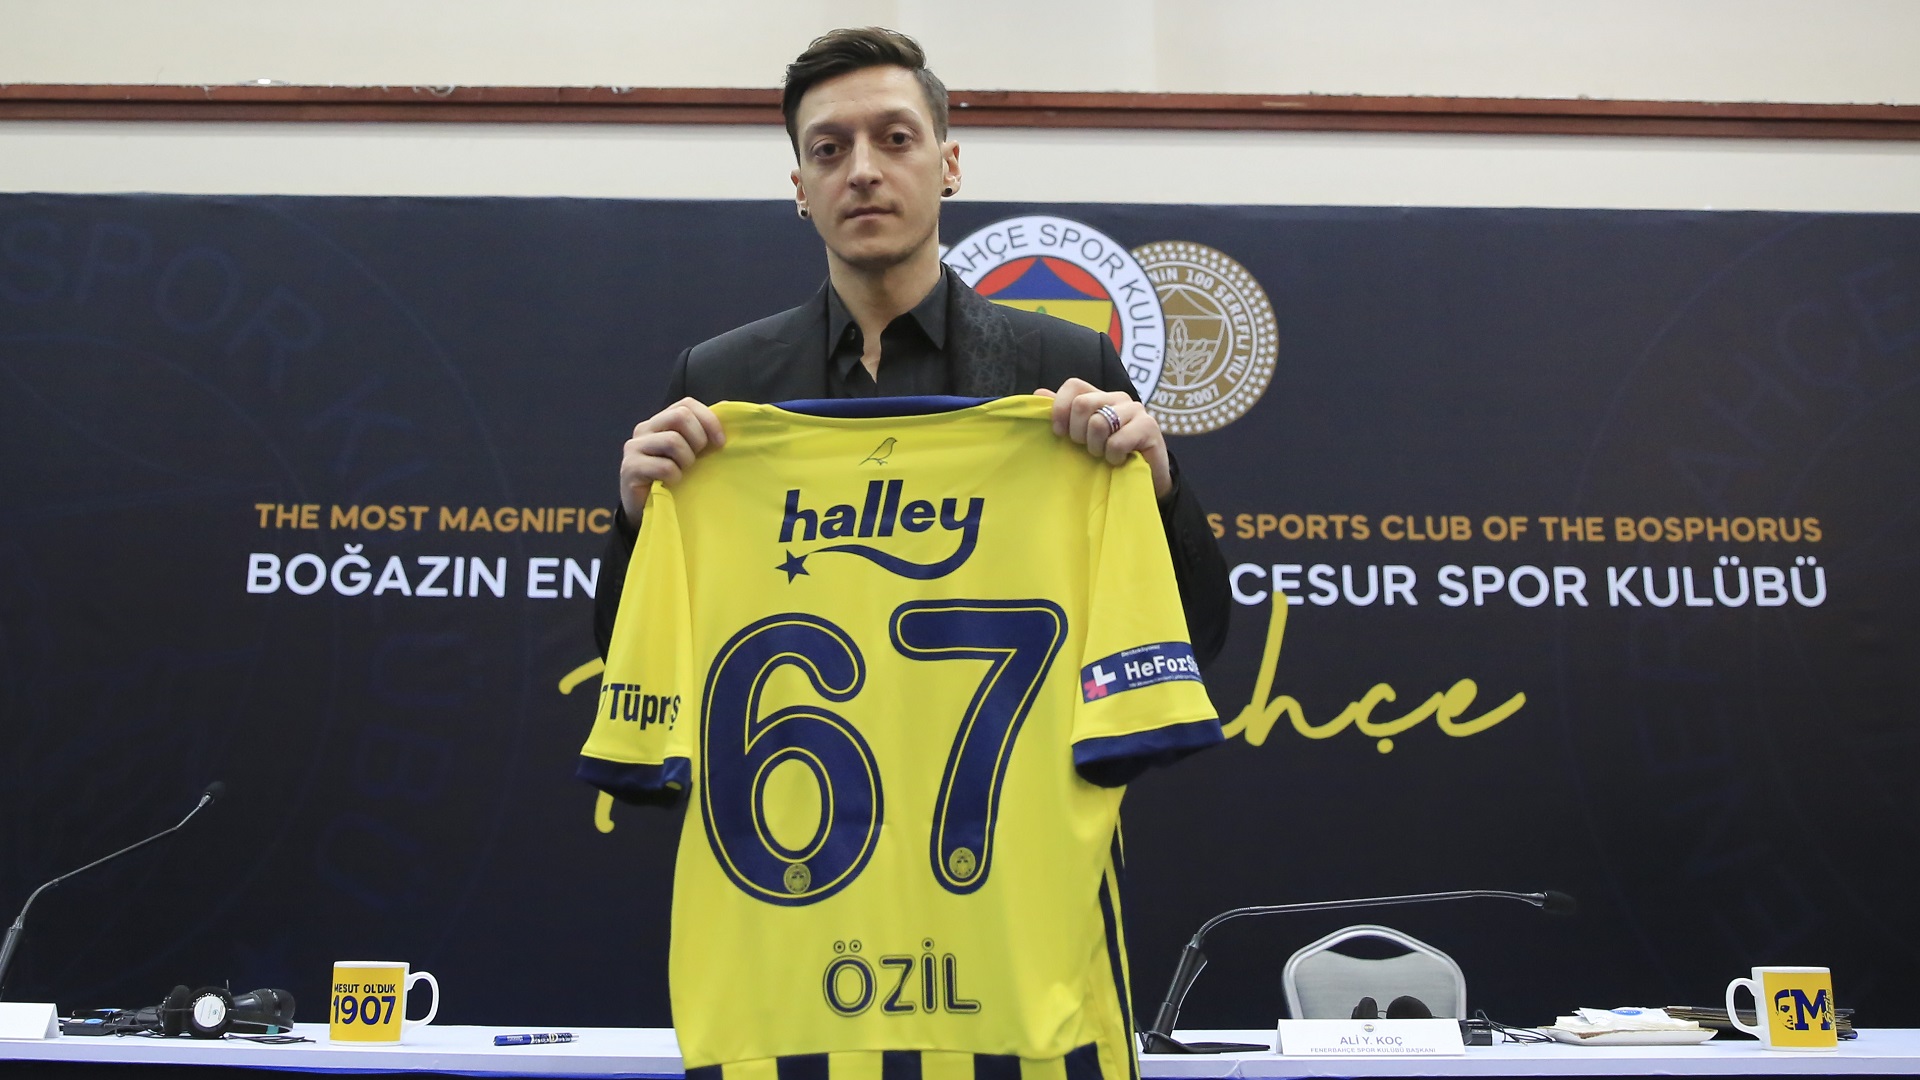 Fenerbahce Darum Tragt Mesut Ozil Die Ruckennummer 67 Goal Com